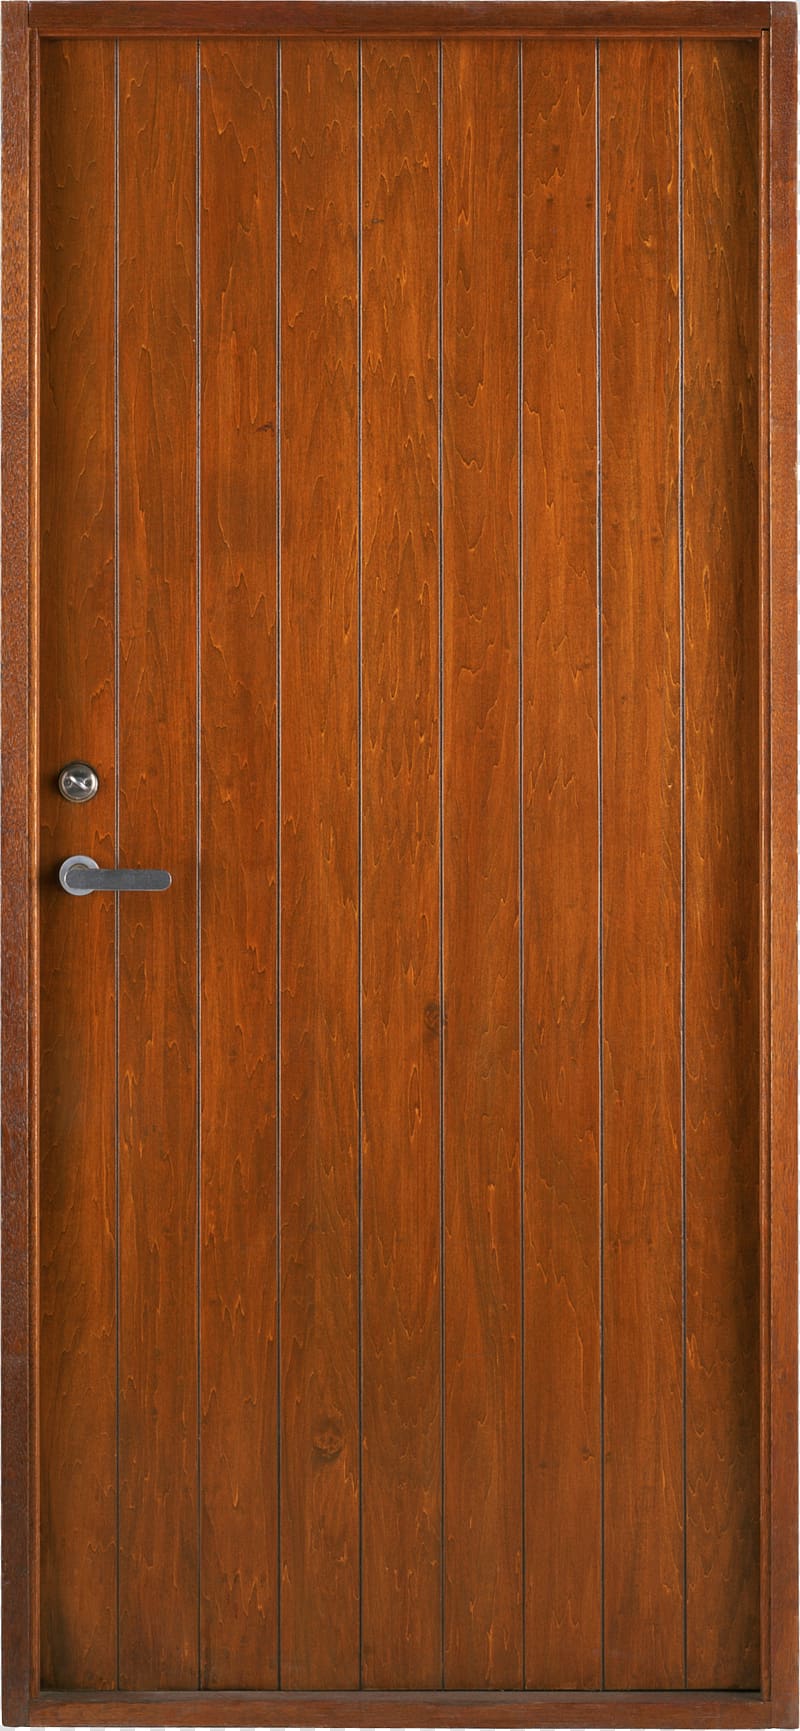 brown door illustration, Door Wood stain Lumber Hardwood Painting, Wood door transparent background PNG clipart